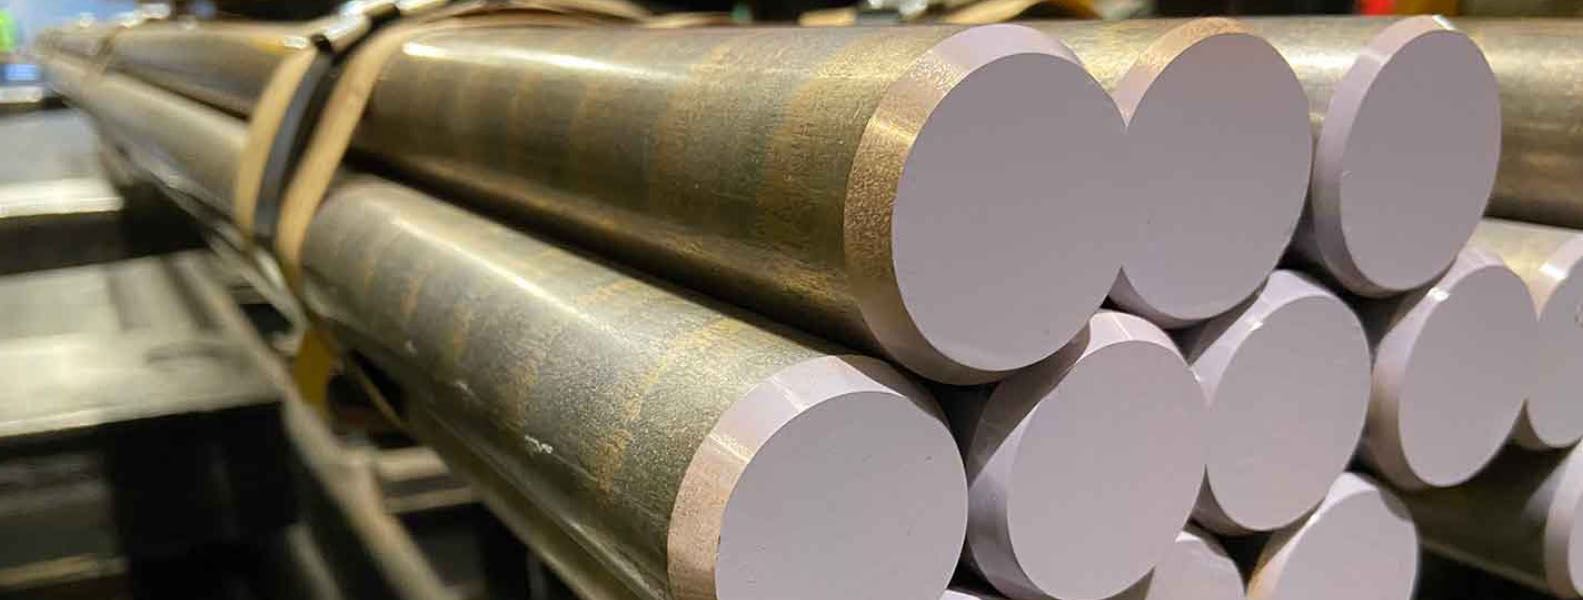 Aluminium Bronze Bar Manufacturers in India